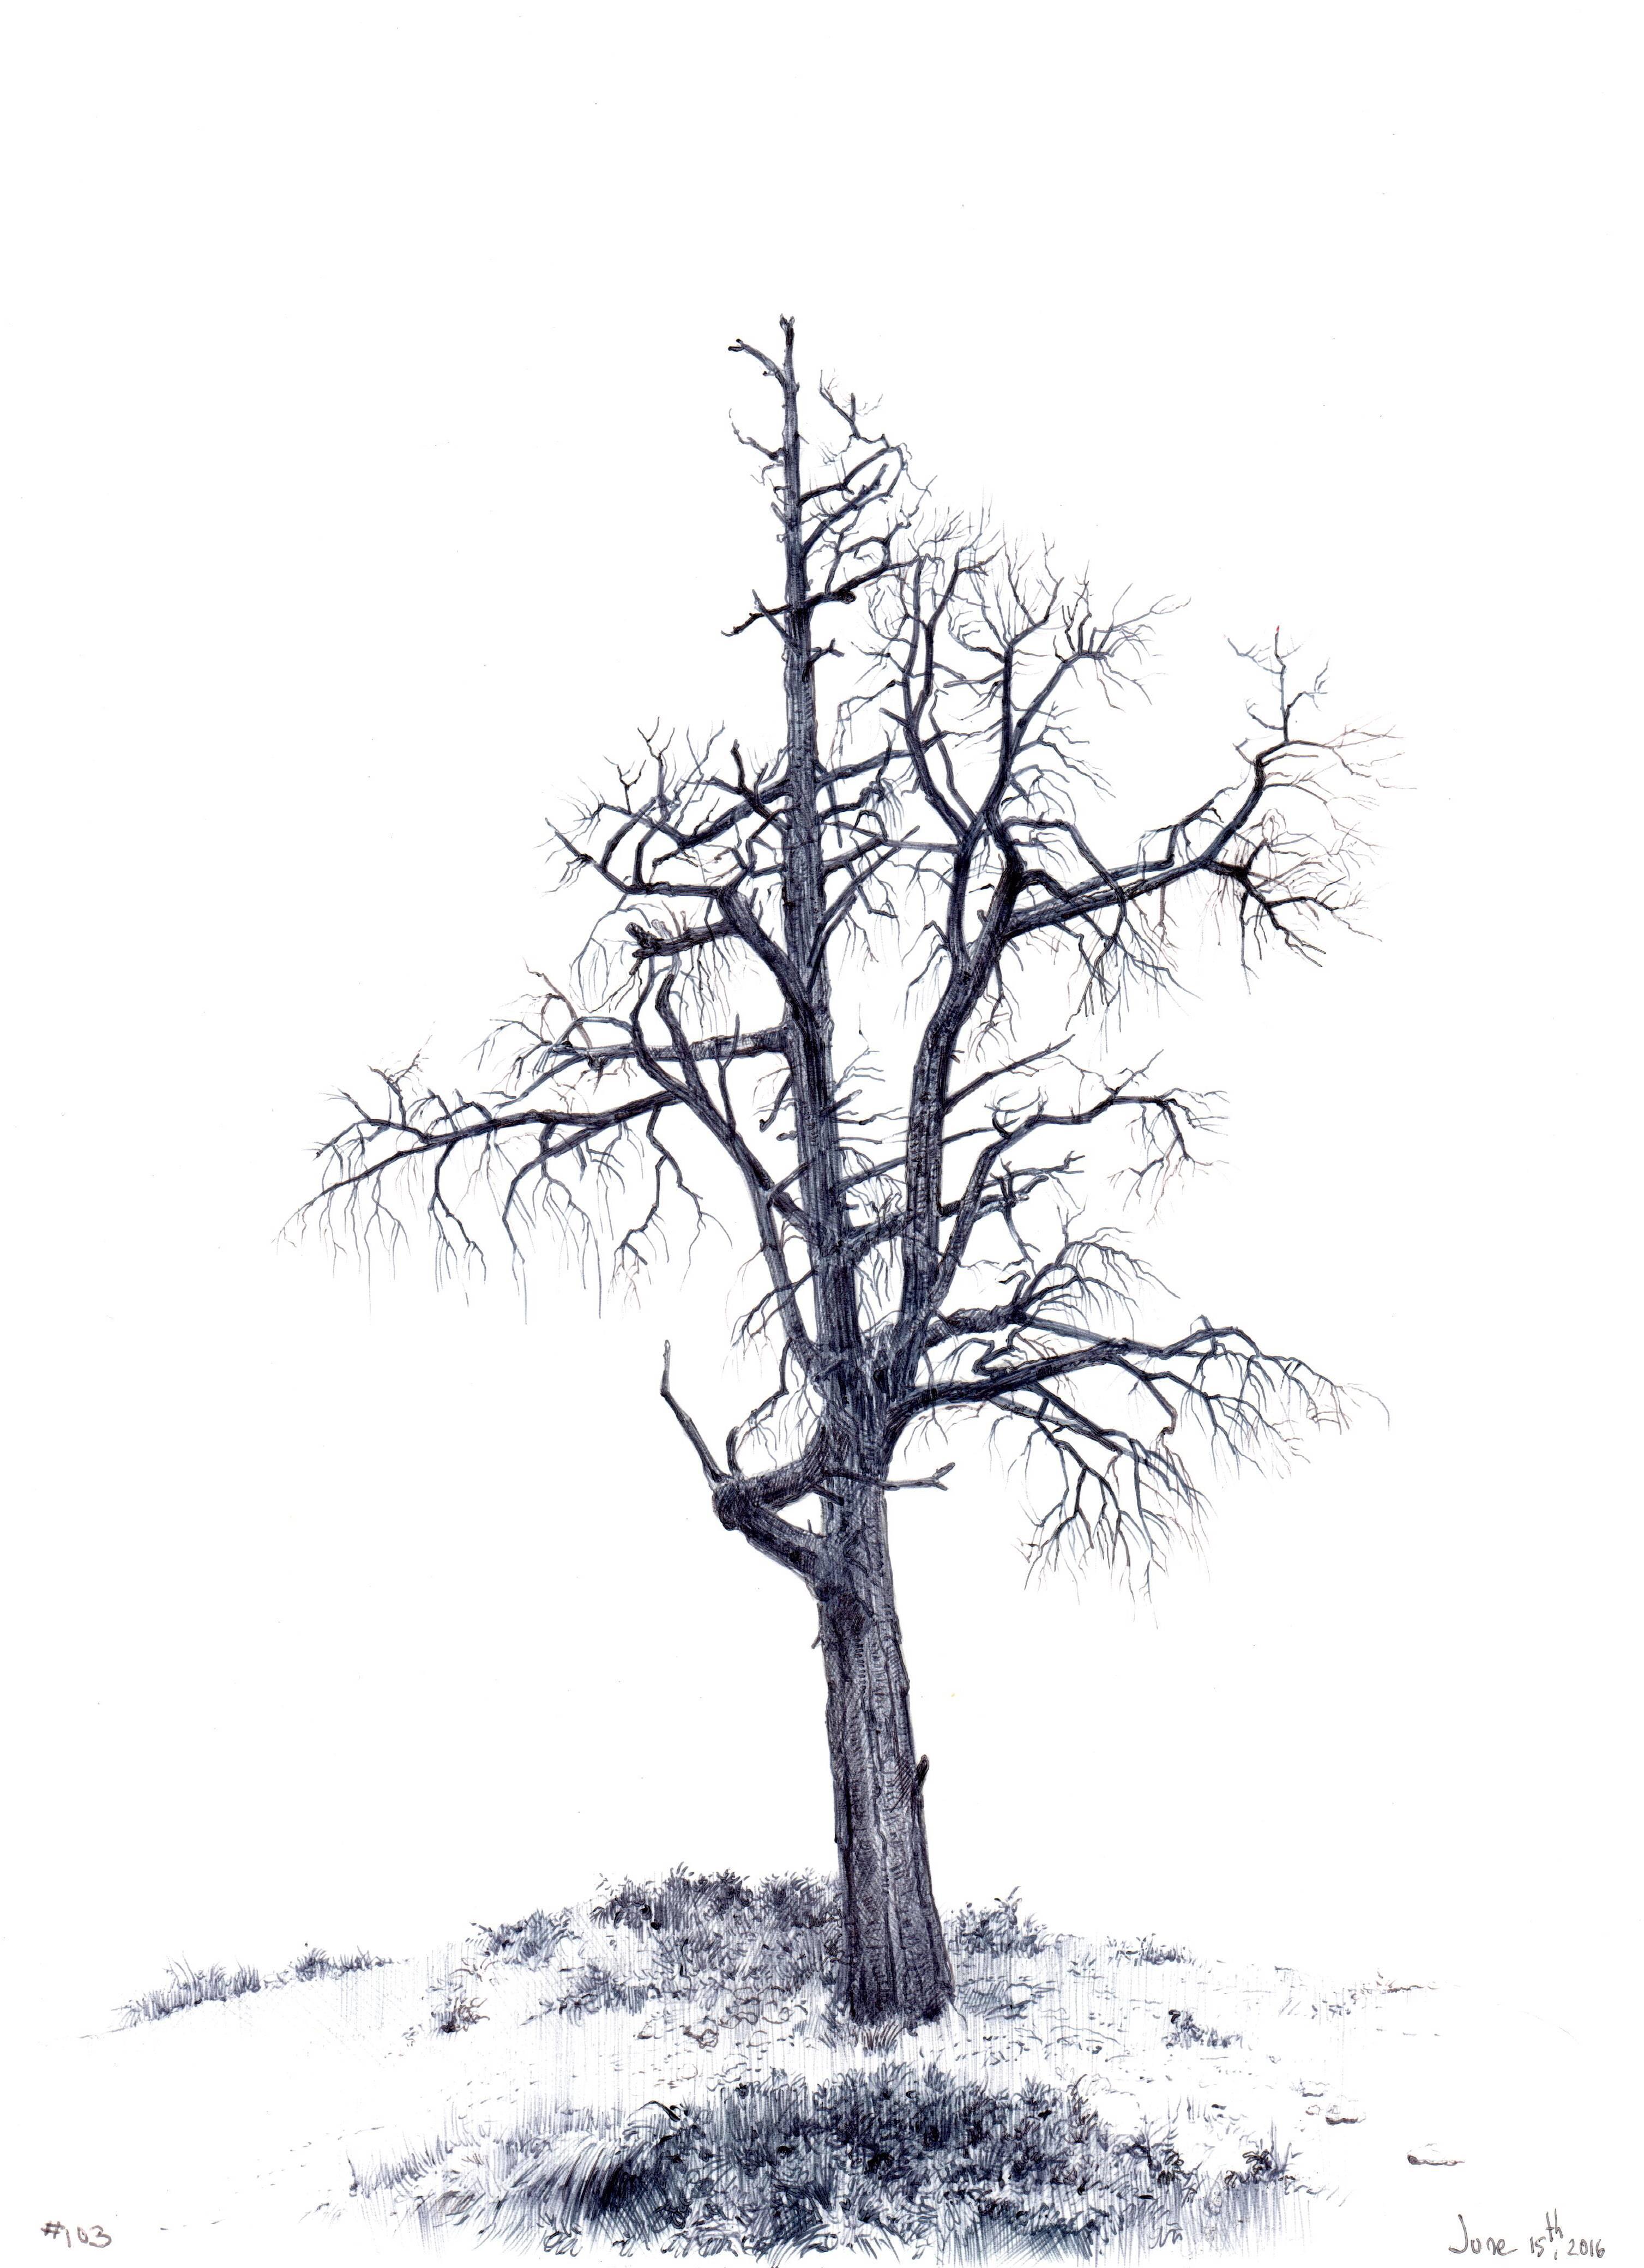 Gerahmt: 10,5 x 10,5 cm.

In ihrer Zeichnung Tree No, 103, 15. Juni 2016, verwendet Dina Brodsky Tusche, um die Texturen der Baumrinde und des umliegenden Grases hervorzuheben. Durch die strikte Verwendung von Schwarz und Weiß kann Brodsky die